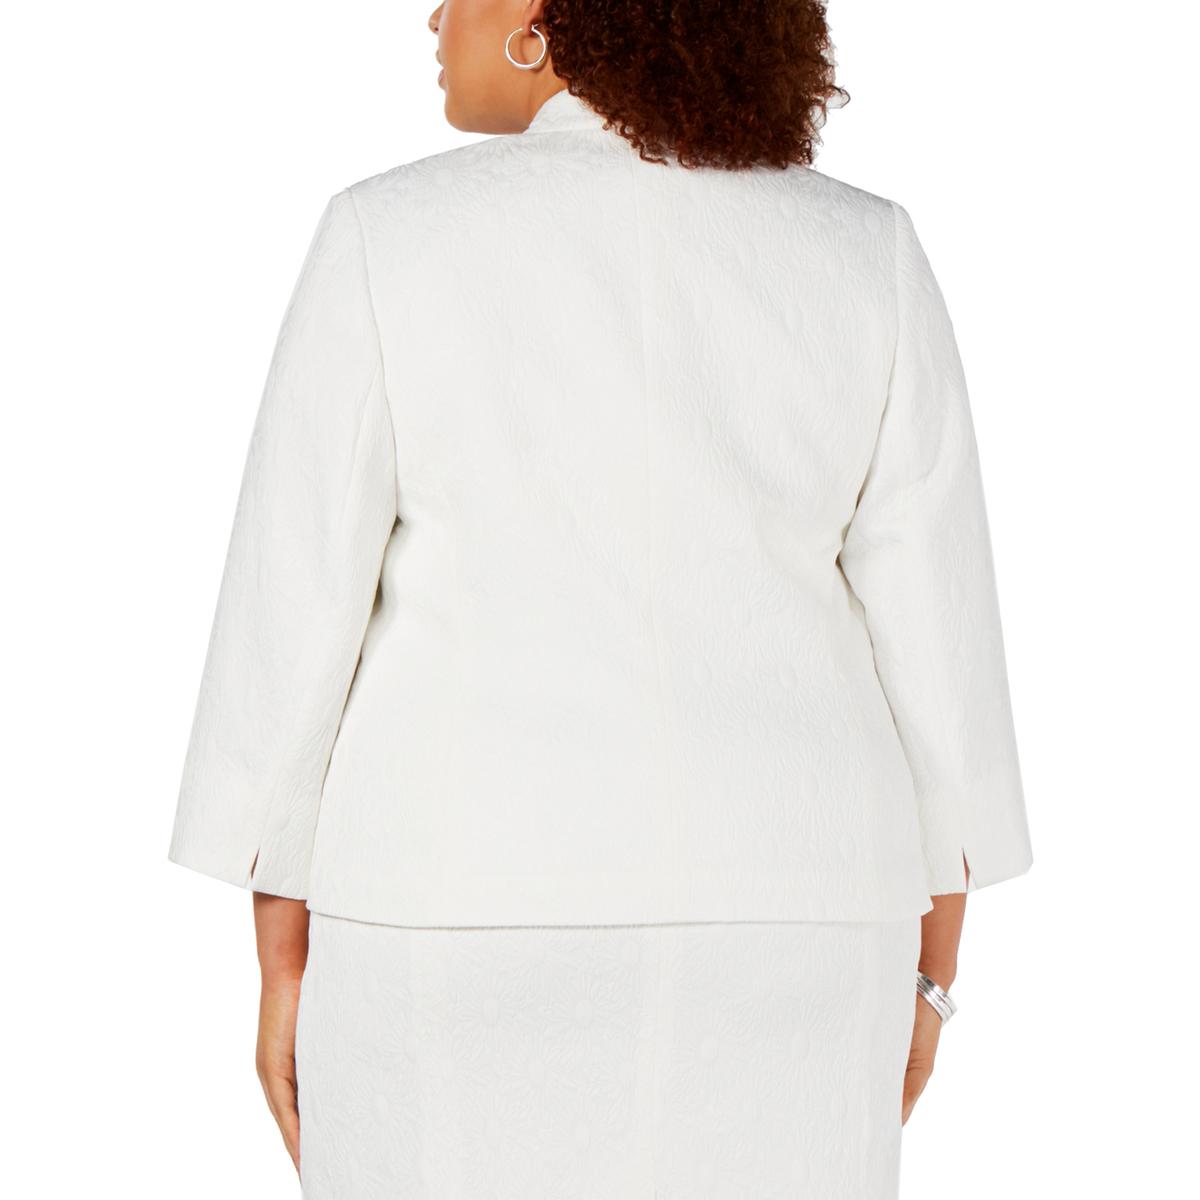 Kasper Womens White Professional Business Jacket Blazer Plus 22W BHFO ...